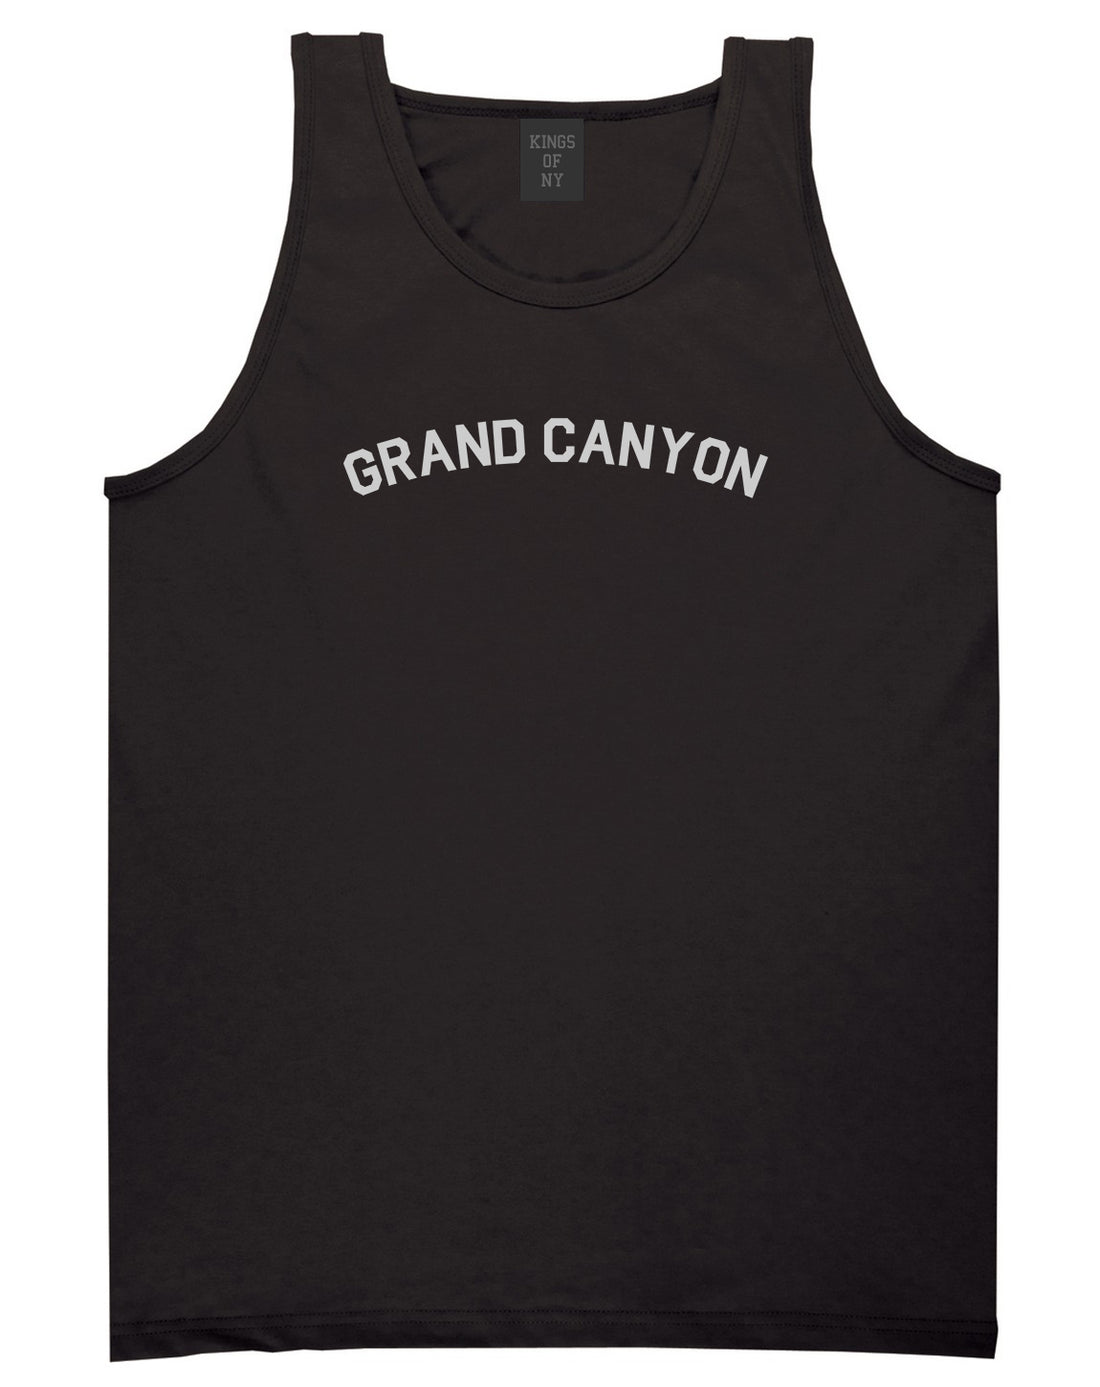 Grand Canyon Mens Black Tank Top Shirt by KINGS OF NY